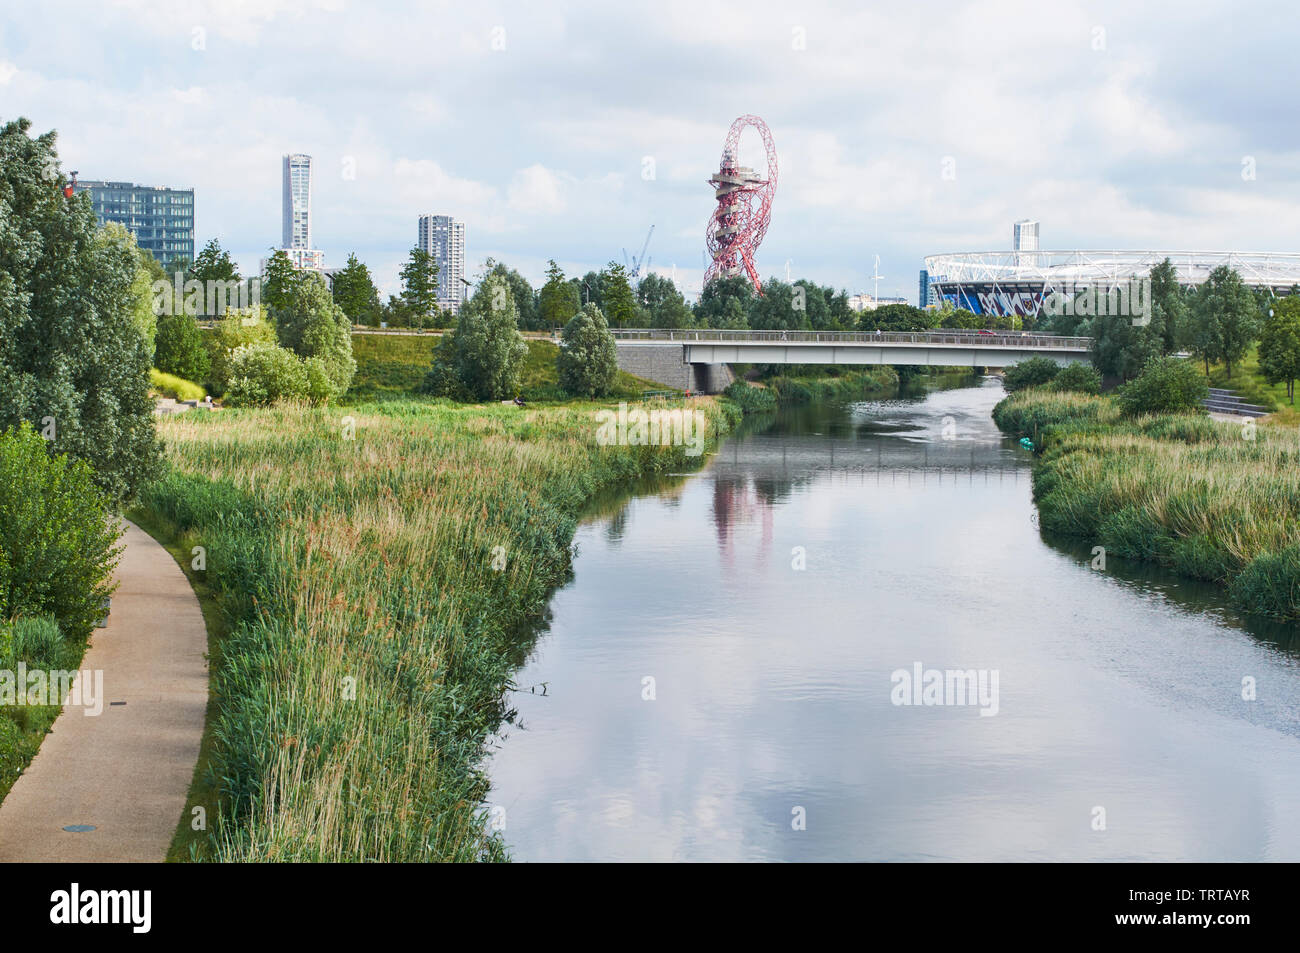 Le nord du parc dans le Parc olympique de Londres, Stratford, à au sud vers le stade de Londres, le long de la rivière Lea Banque D'Images